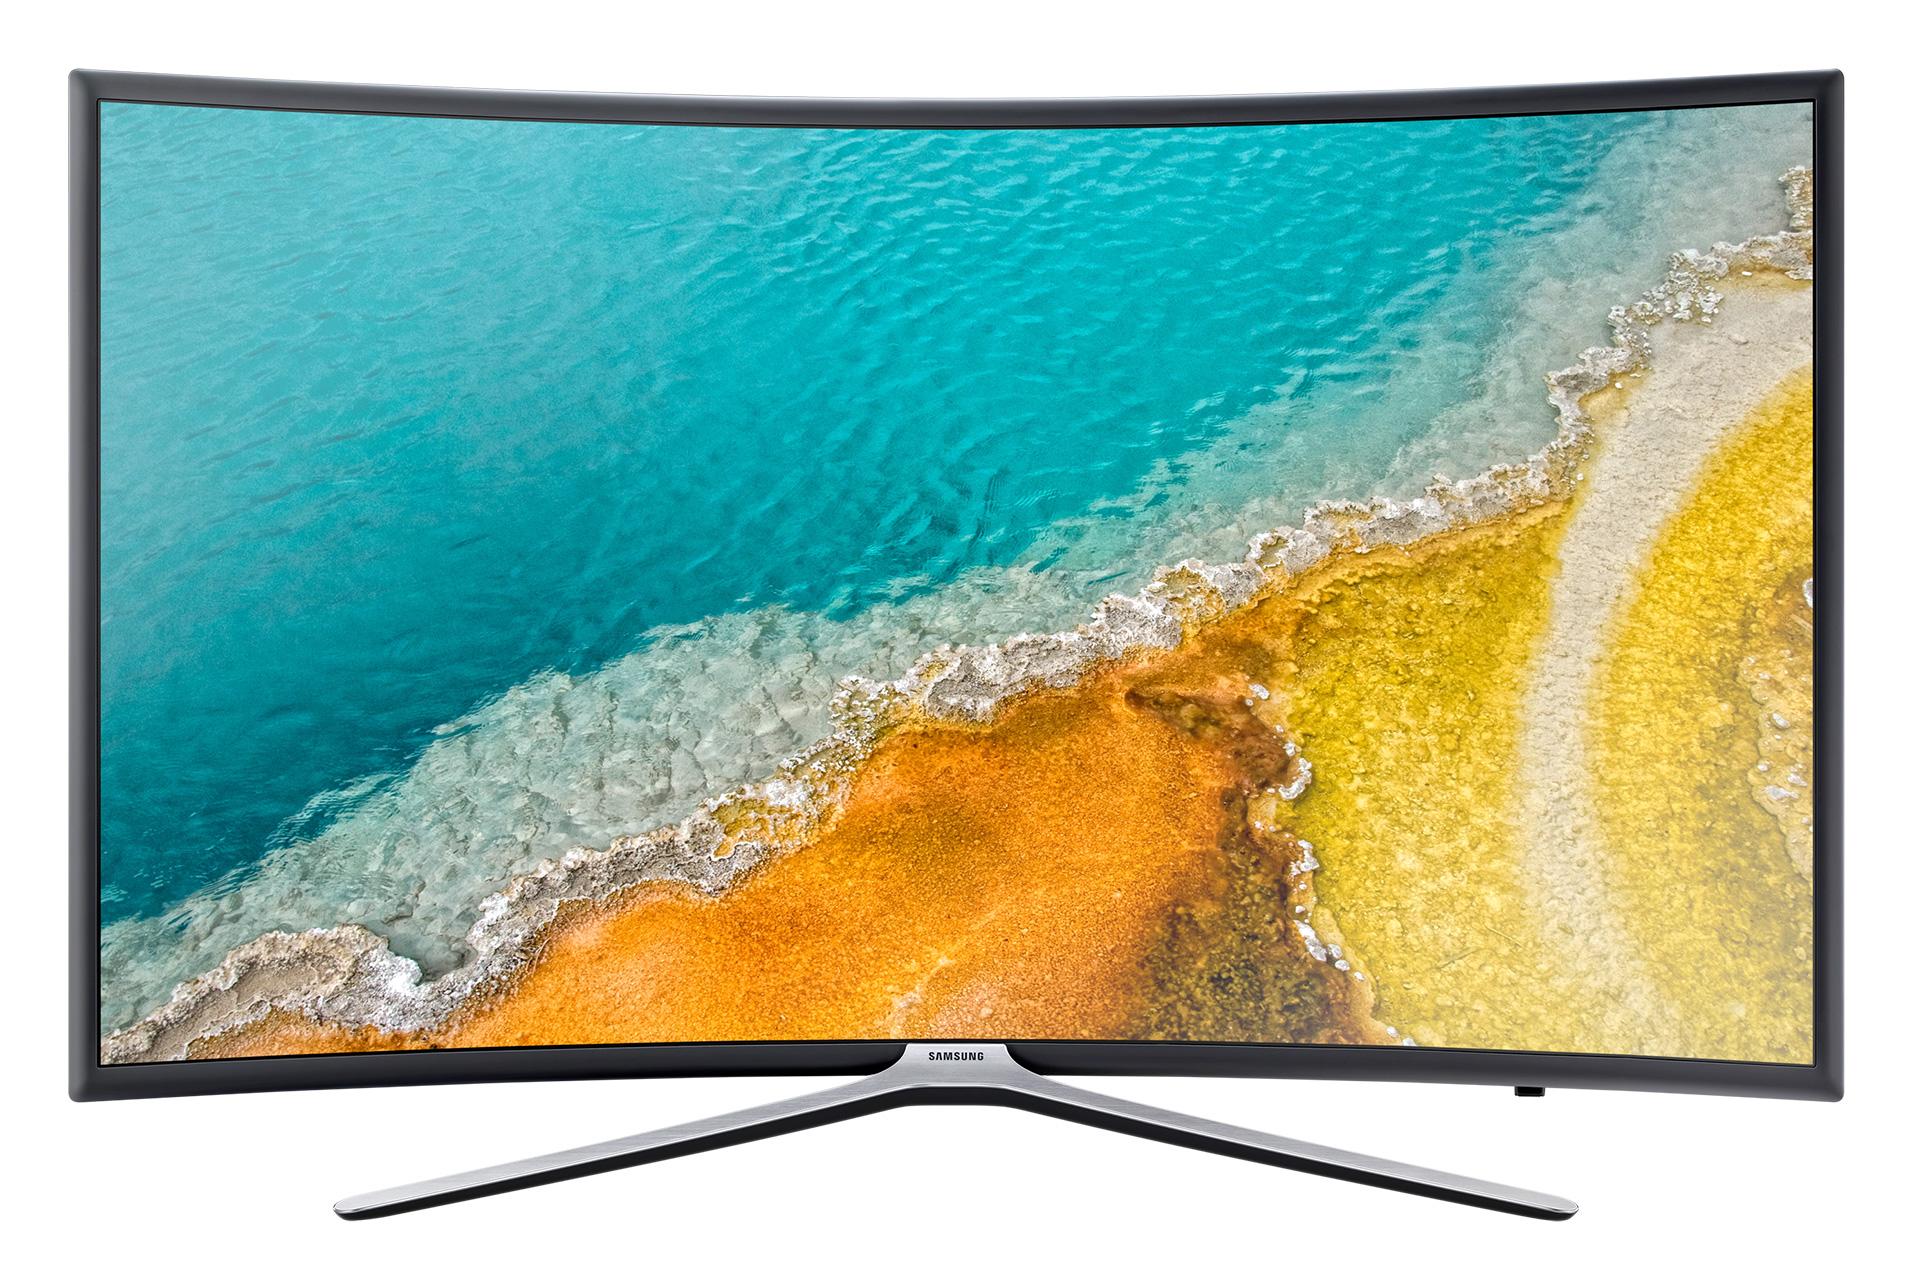 نمای جلو تلویزیون سامسونگ K6500 مدل 49 اینچ با صفحه روشن